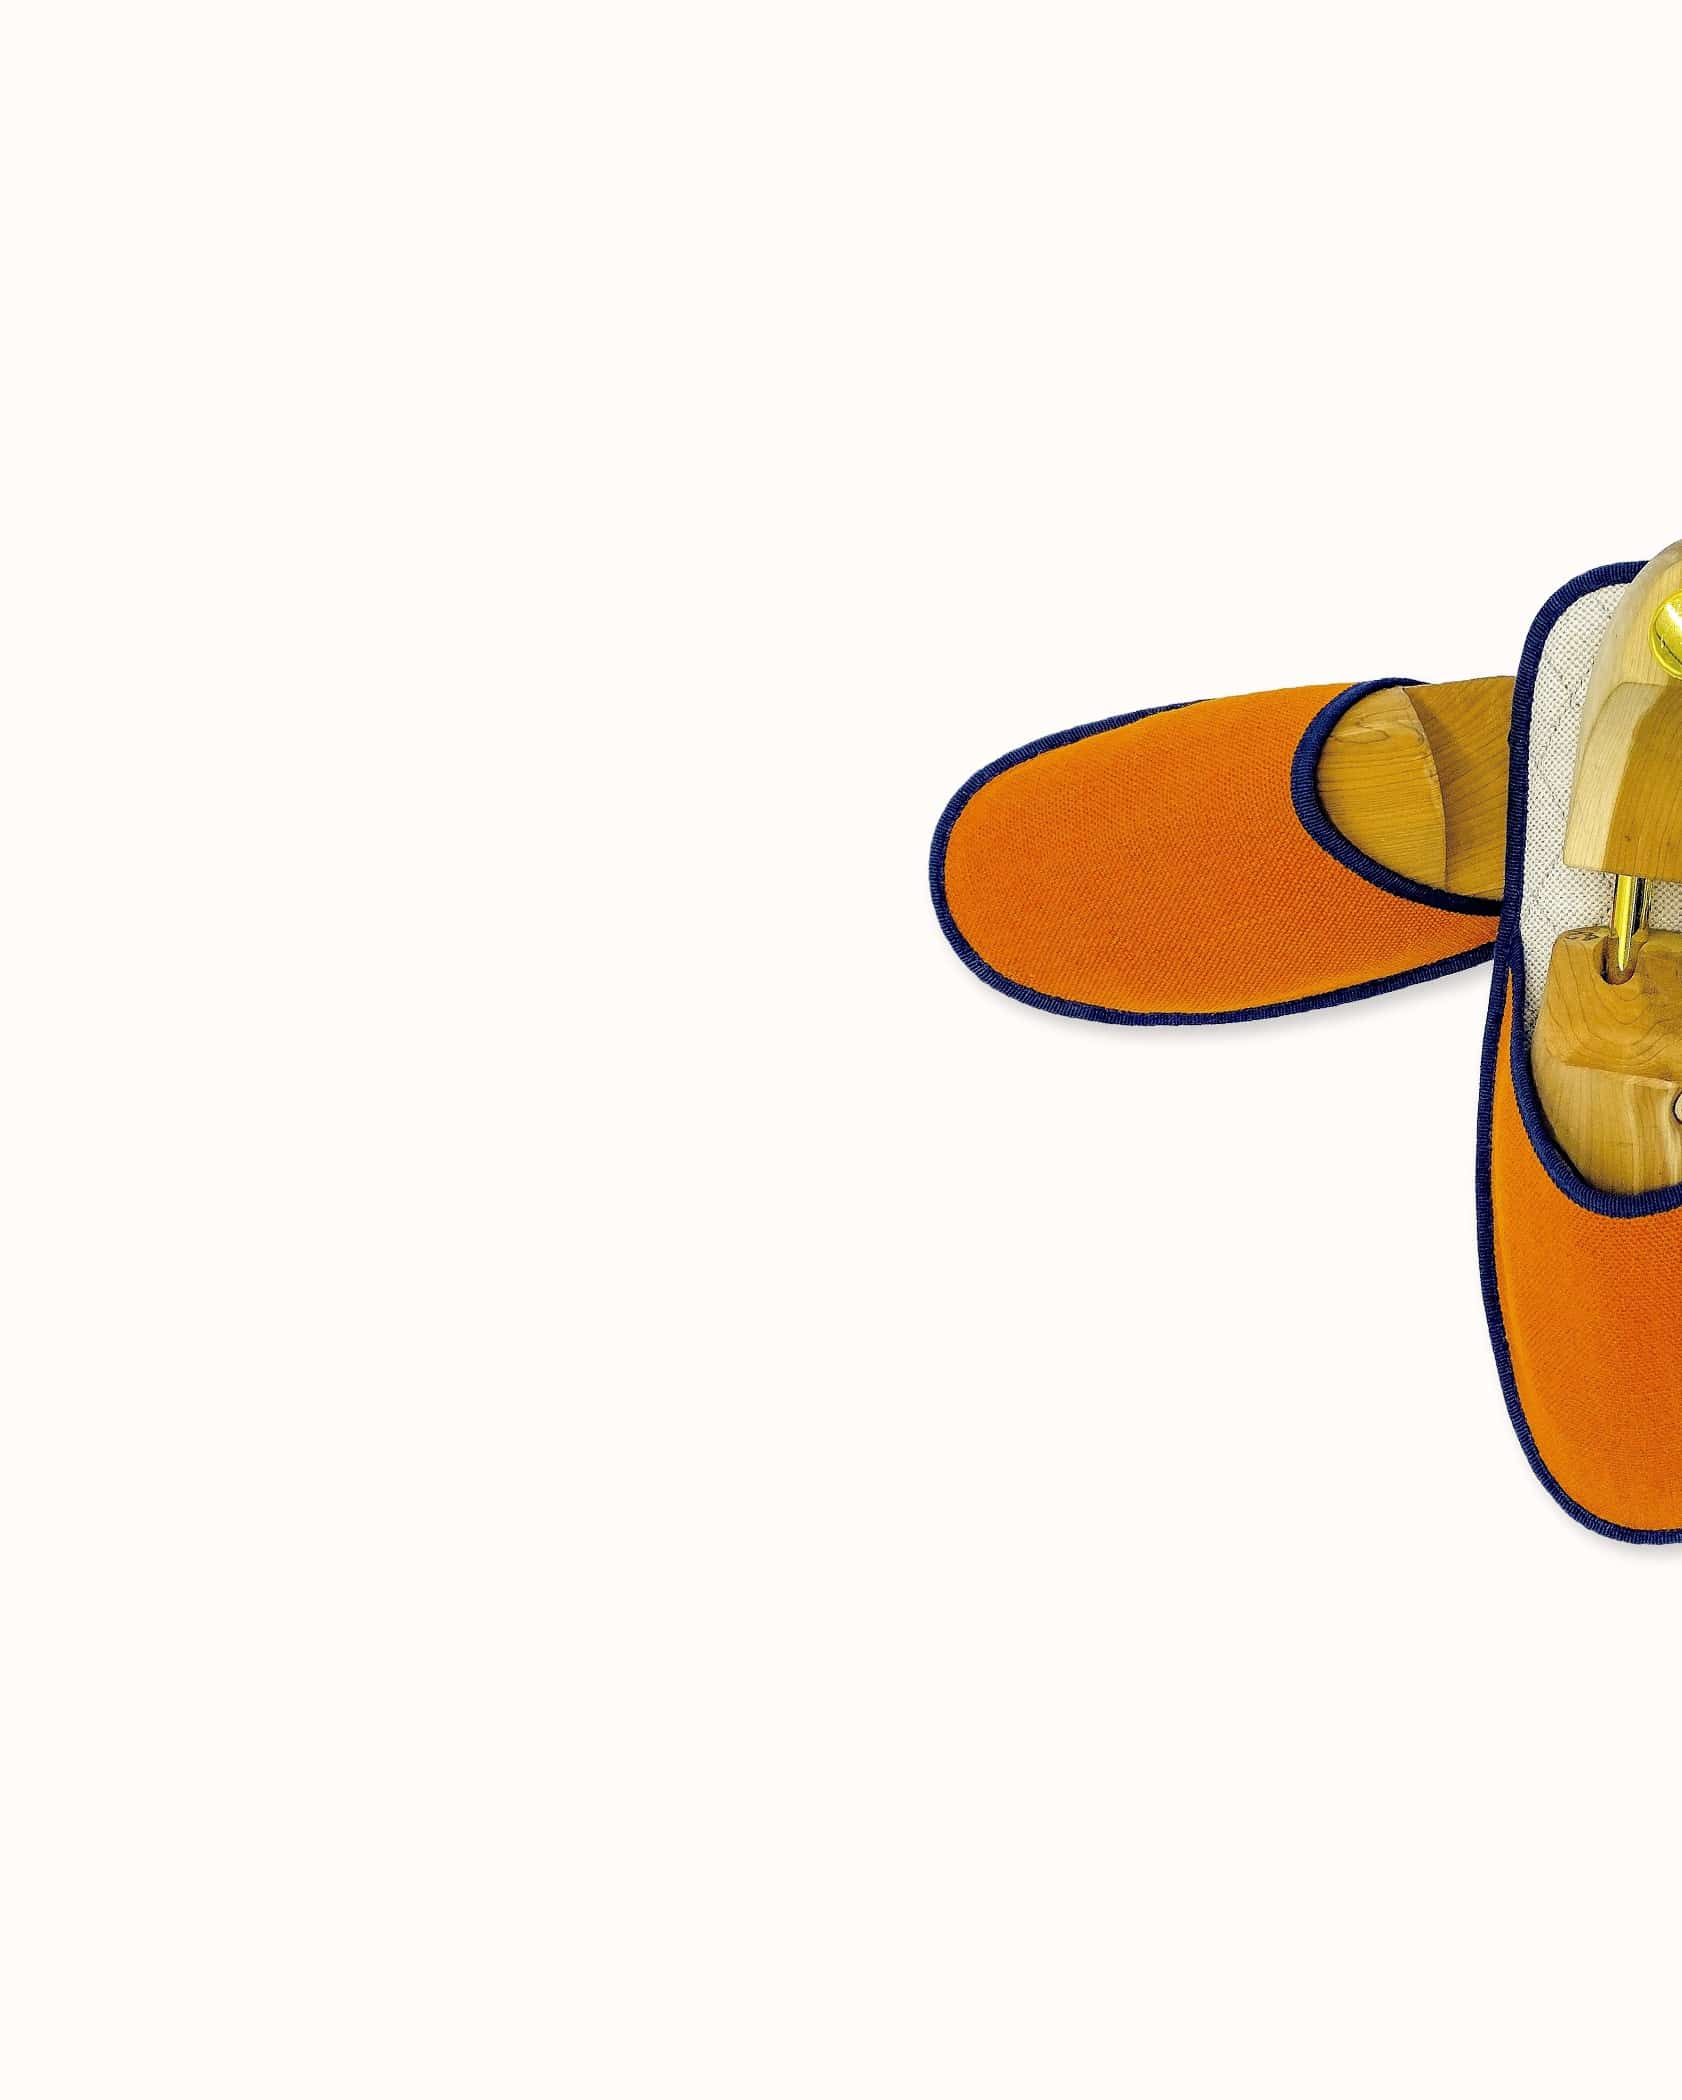 Chausson français pour homme, femme et enfant fabriqué en France. Modèle Feu (orange et bleu), une pantoufle comme à l’hôtel vêtue d’un rembourrage matelassé et d’une finition sophistiquée.